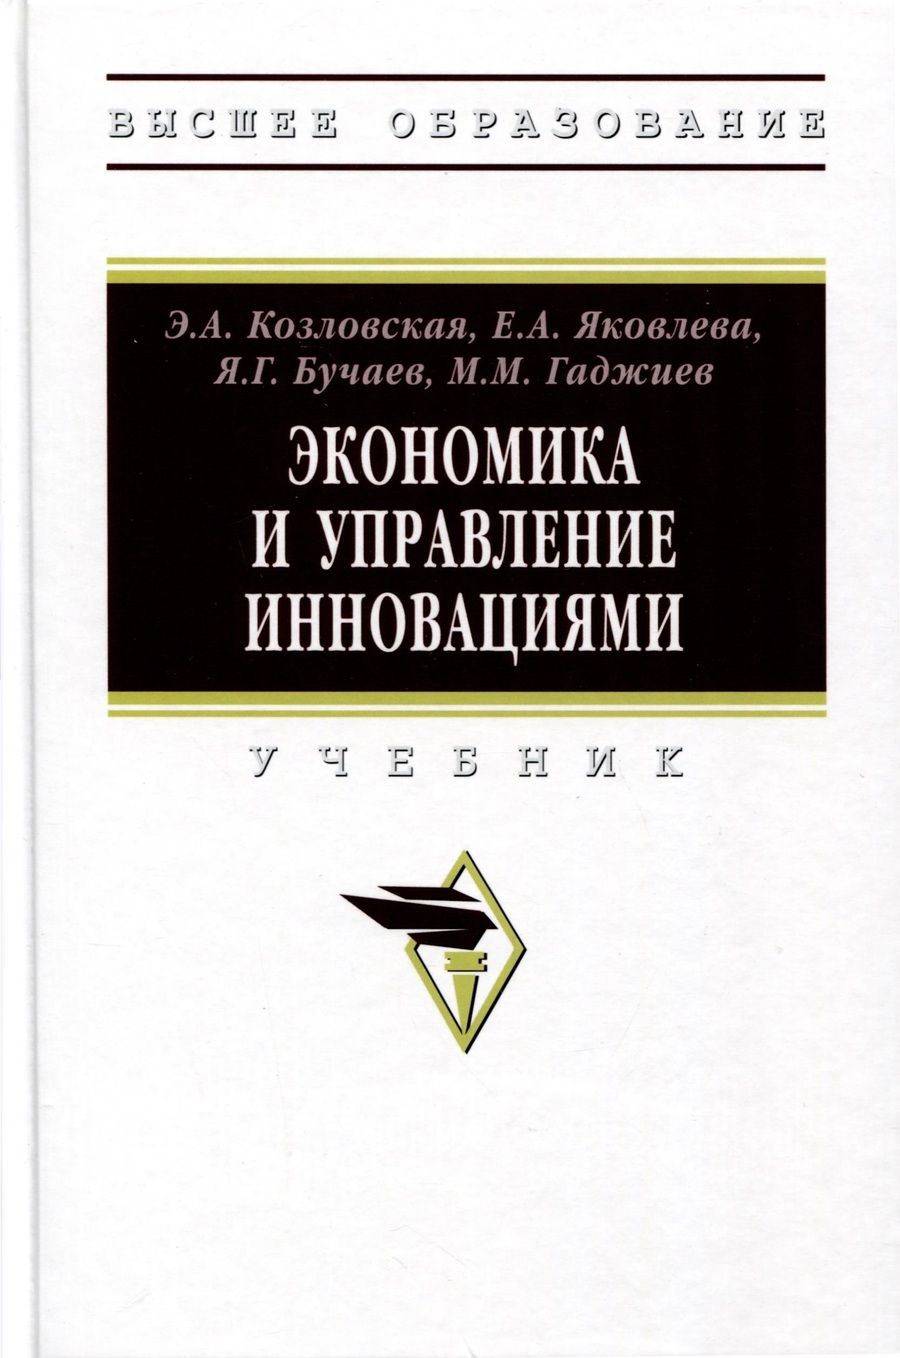 Обложка книги "Козловская, Яковлева, Бучаев: Экономика и управление инновациями. Учебник"